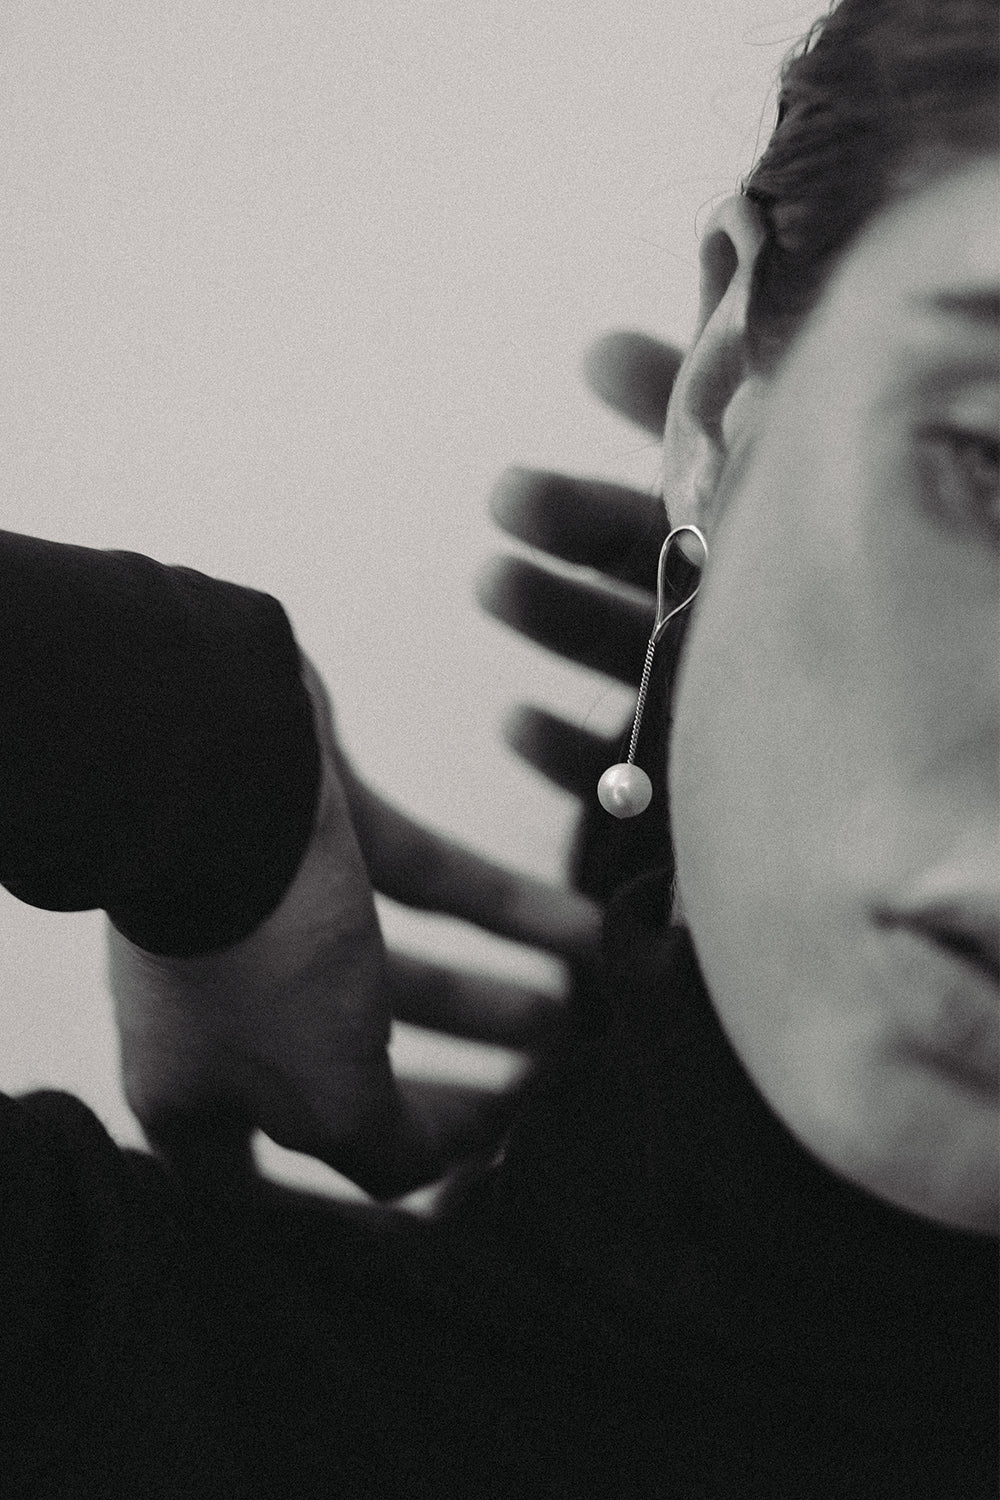 Mini Aqua Earrings | Silver| Natasha Schweitzer